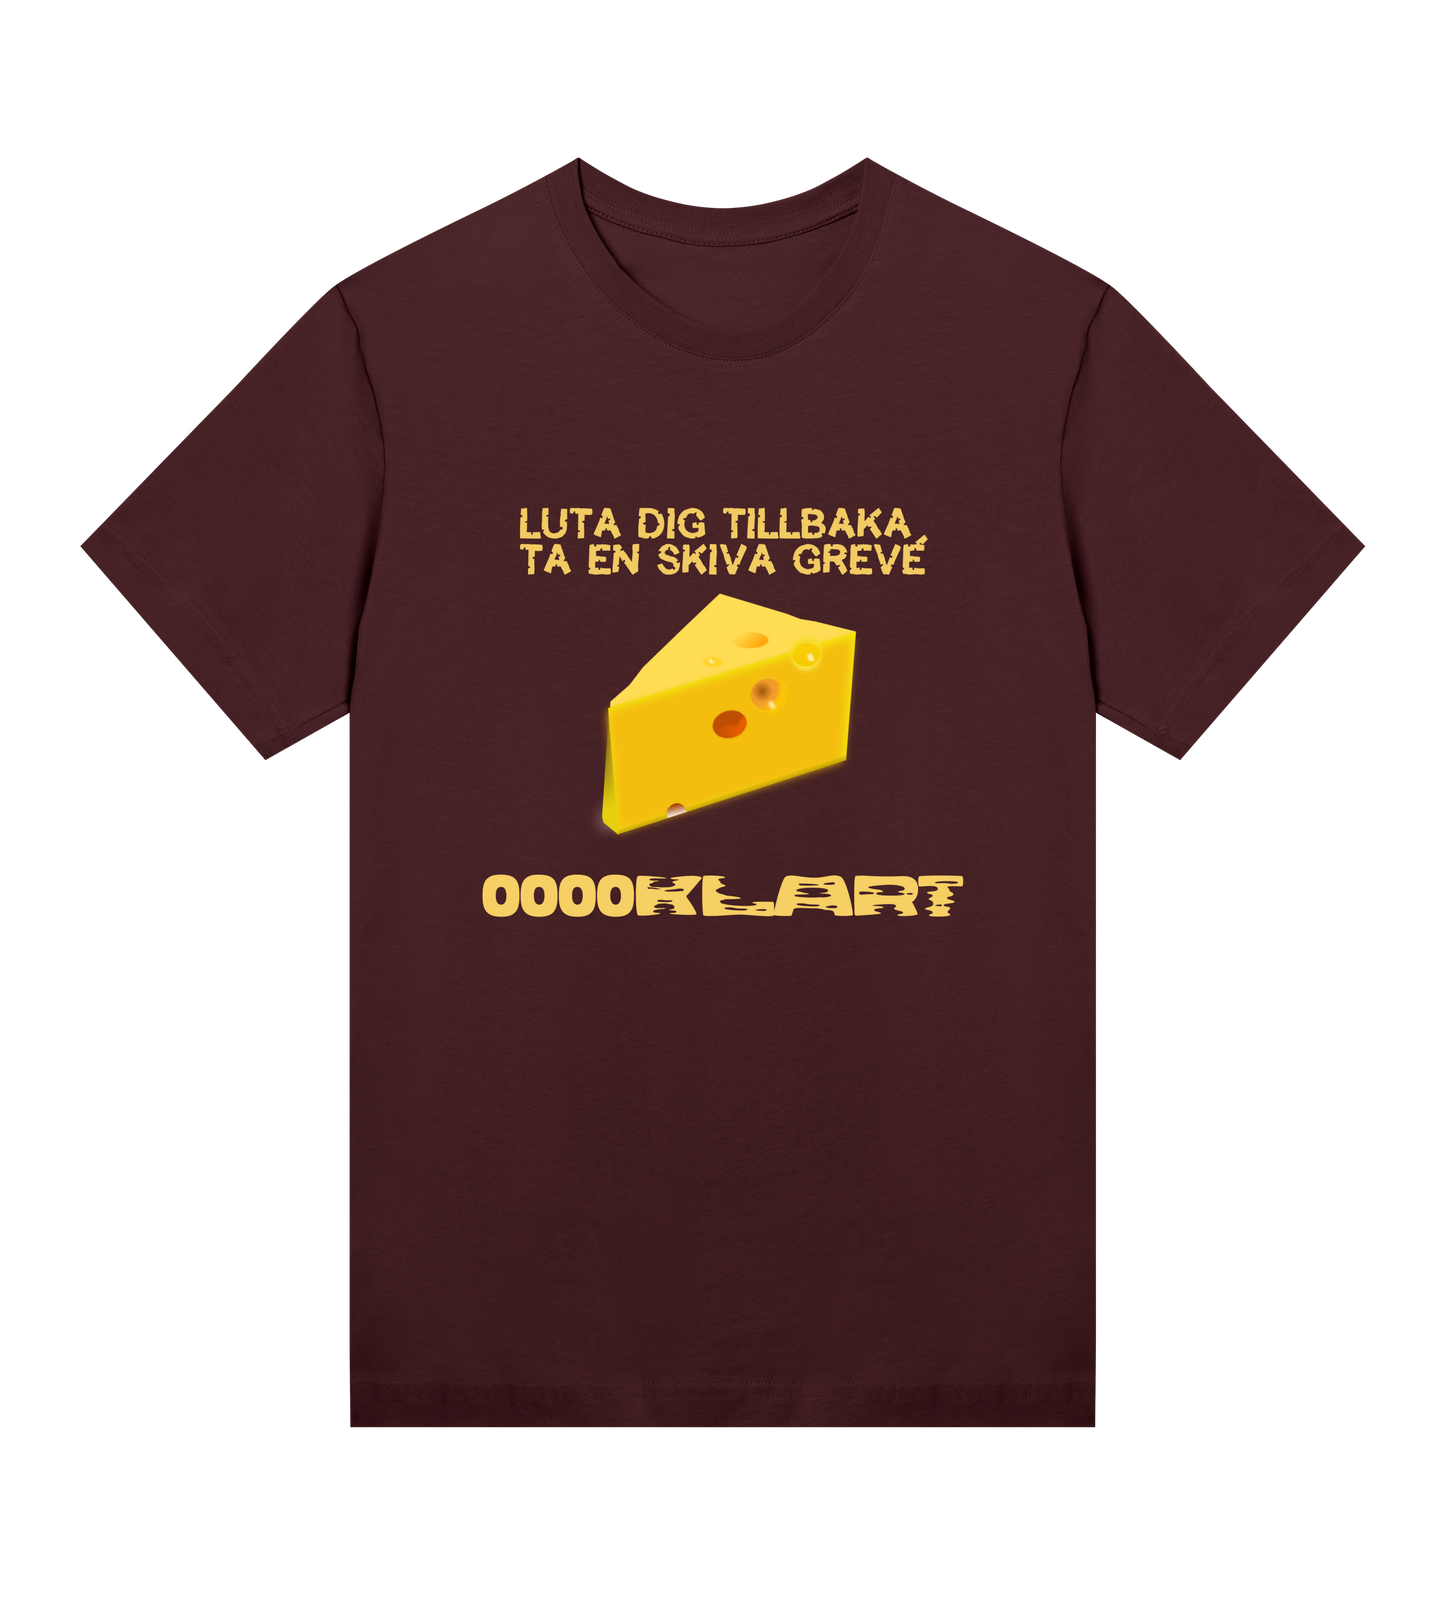 Ooooklart - Cheese Womens T-shirt